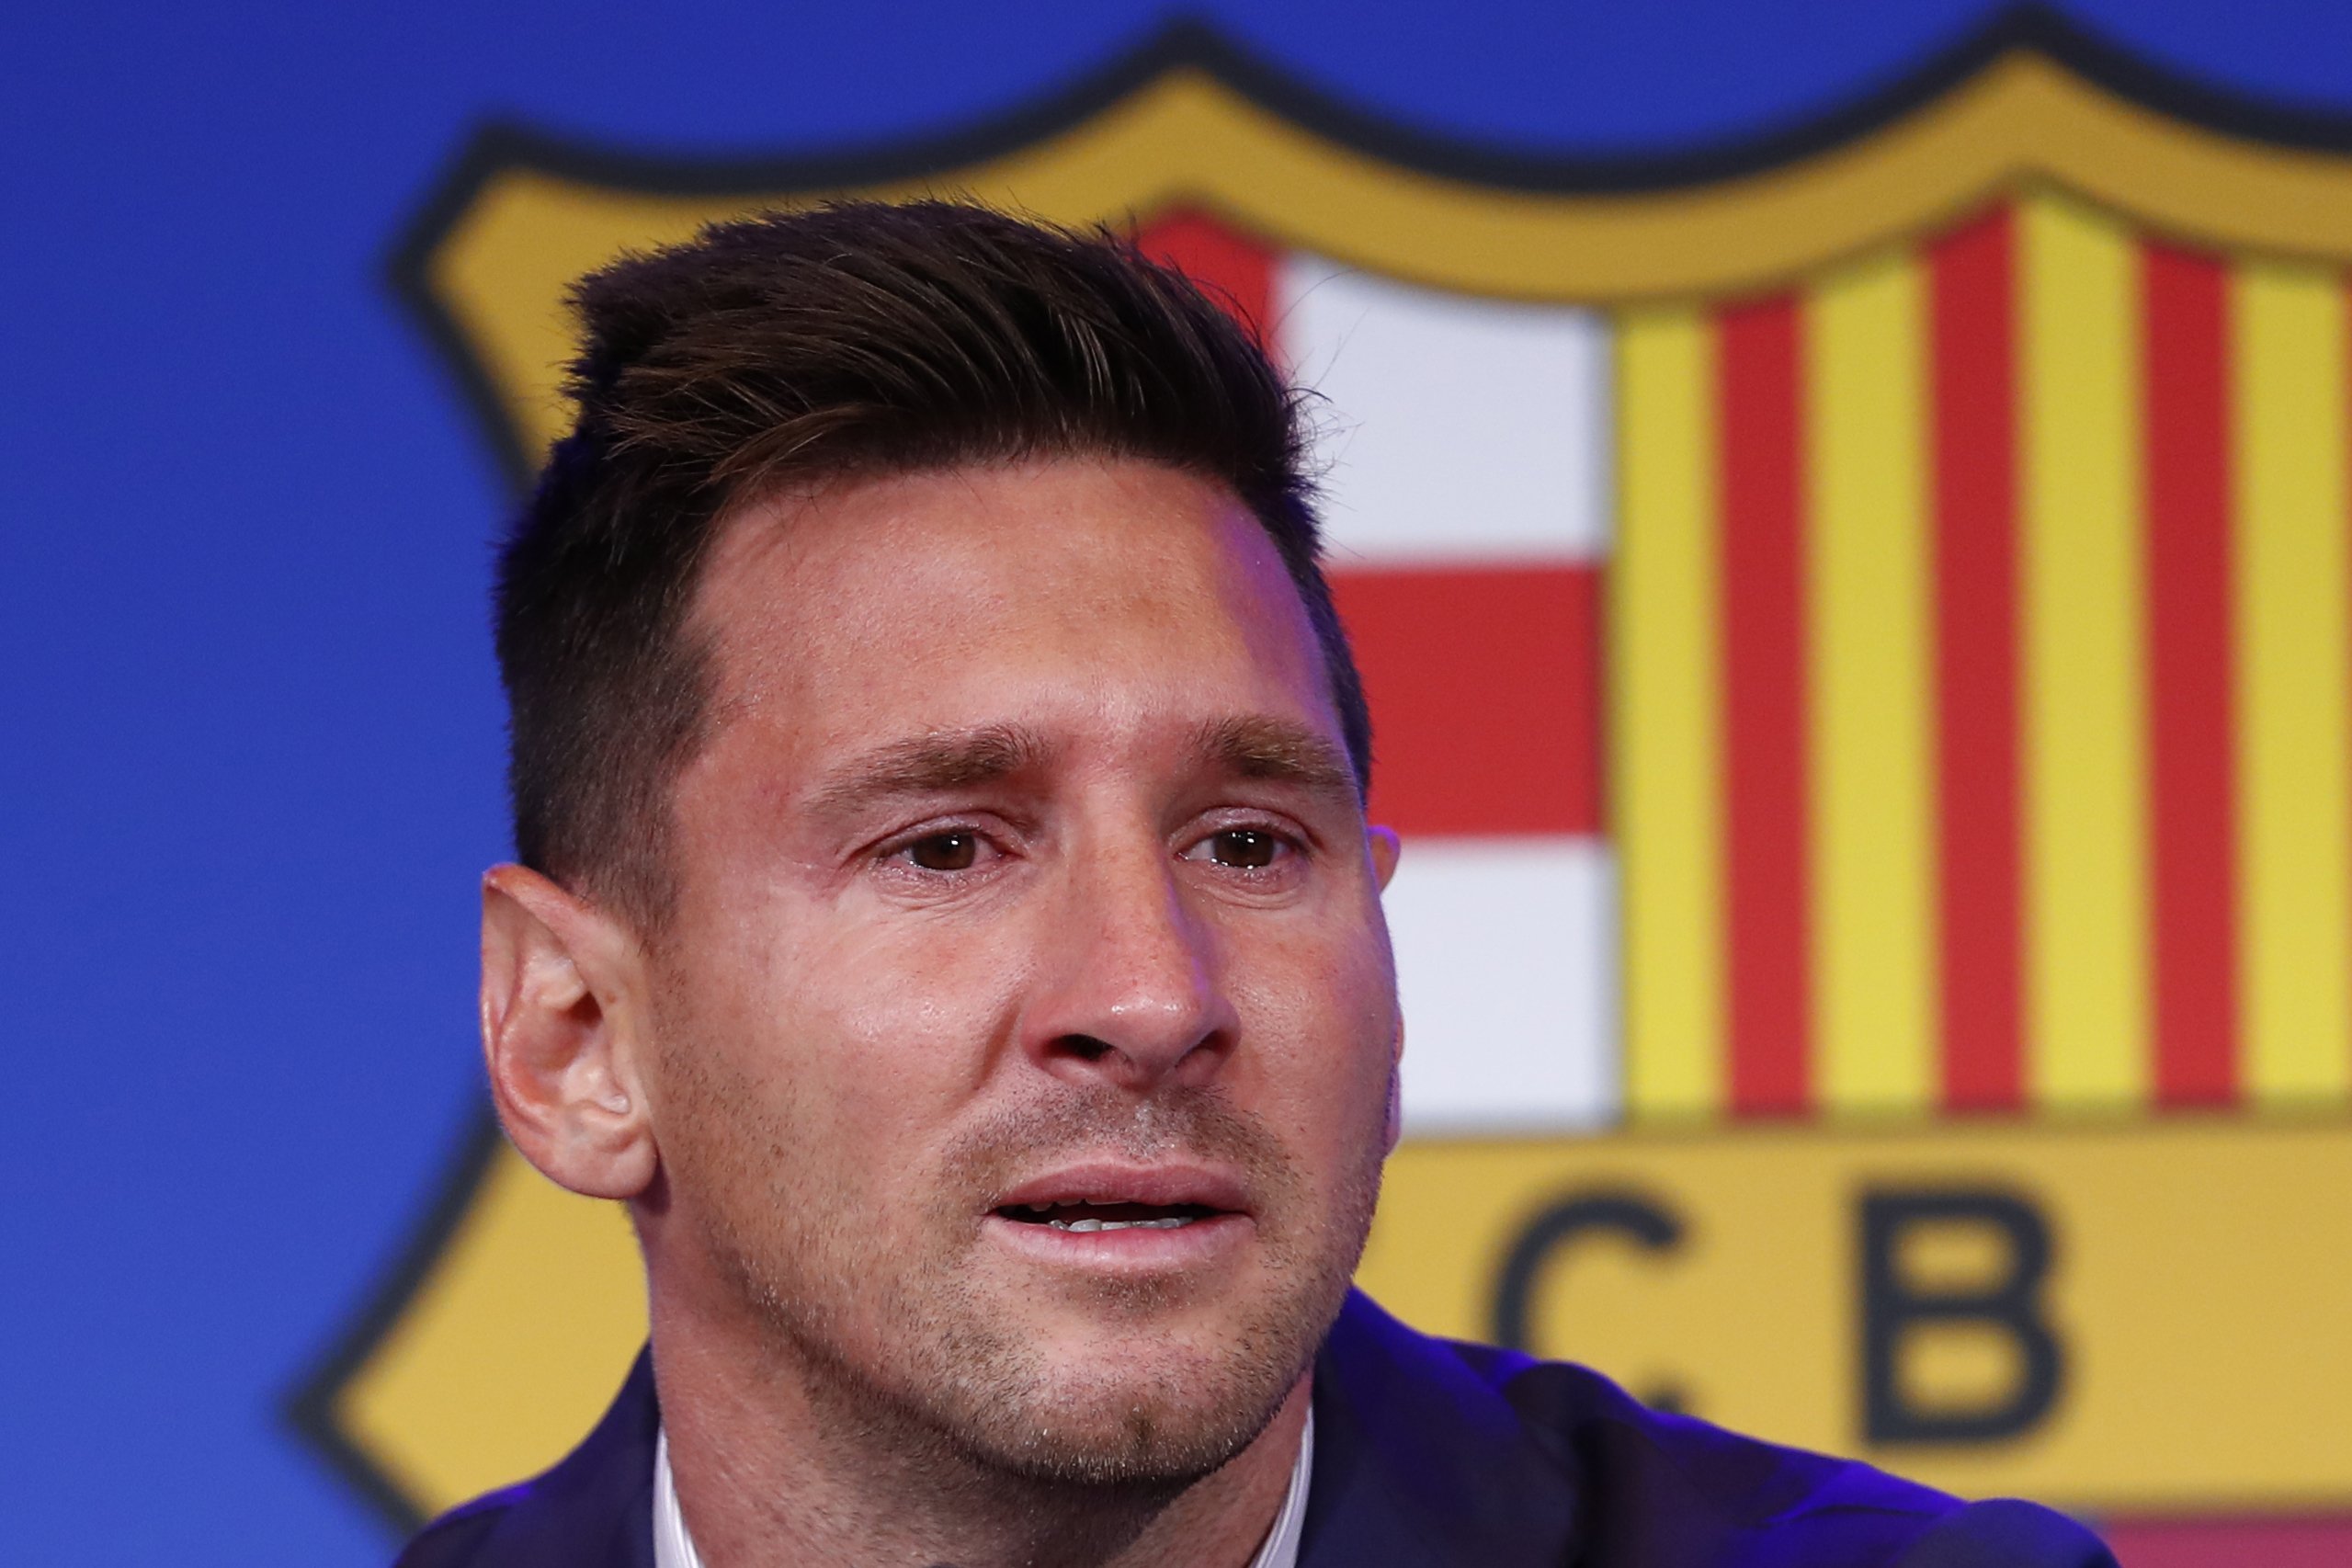 Leo Messi fulminat com mai per un escriptor que l'adorava: "Mercenario, boludo"